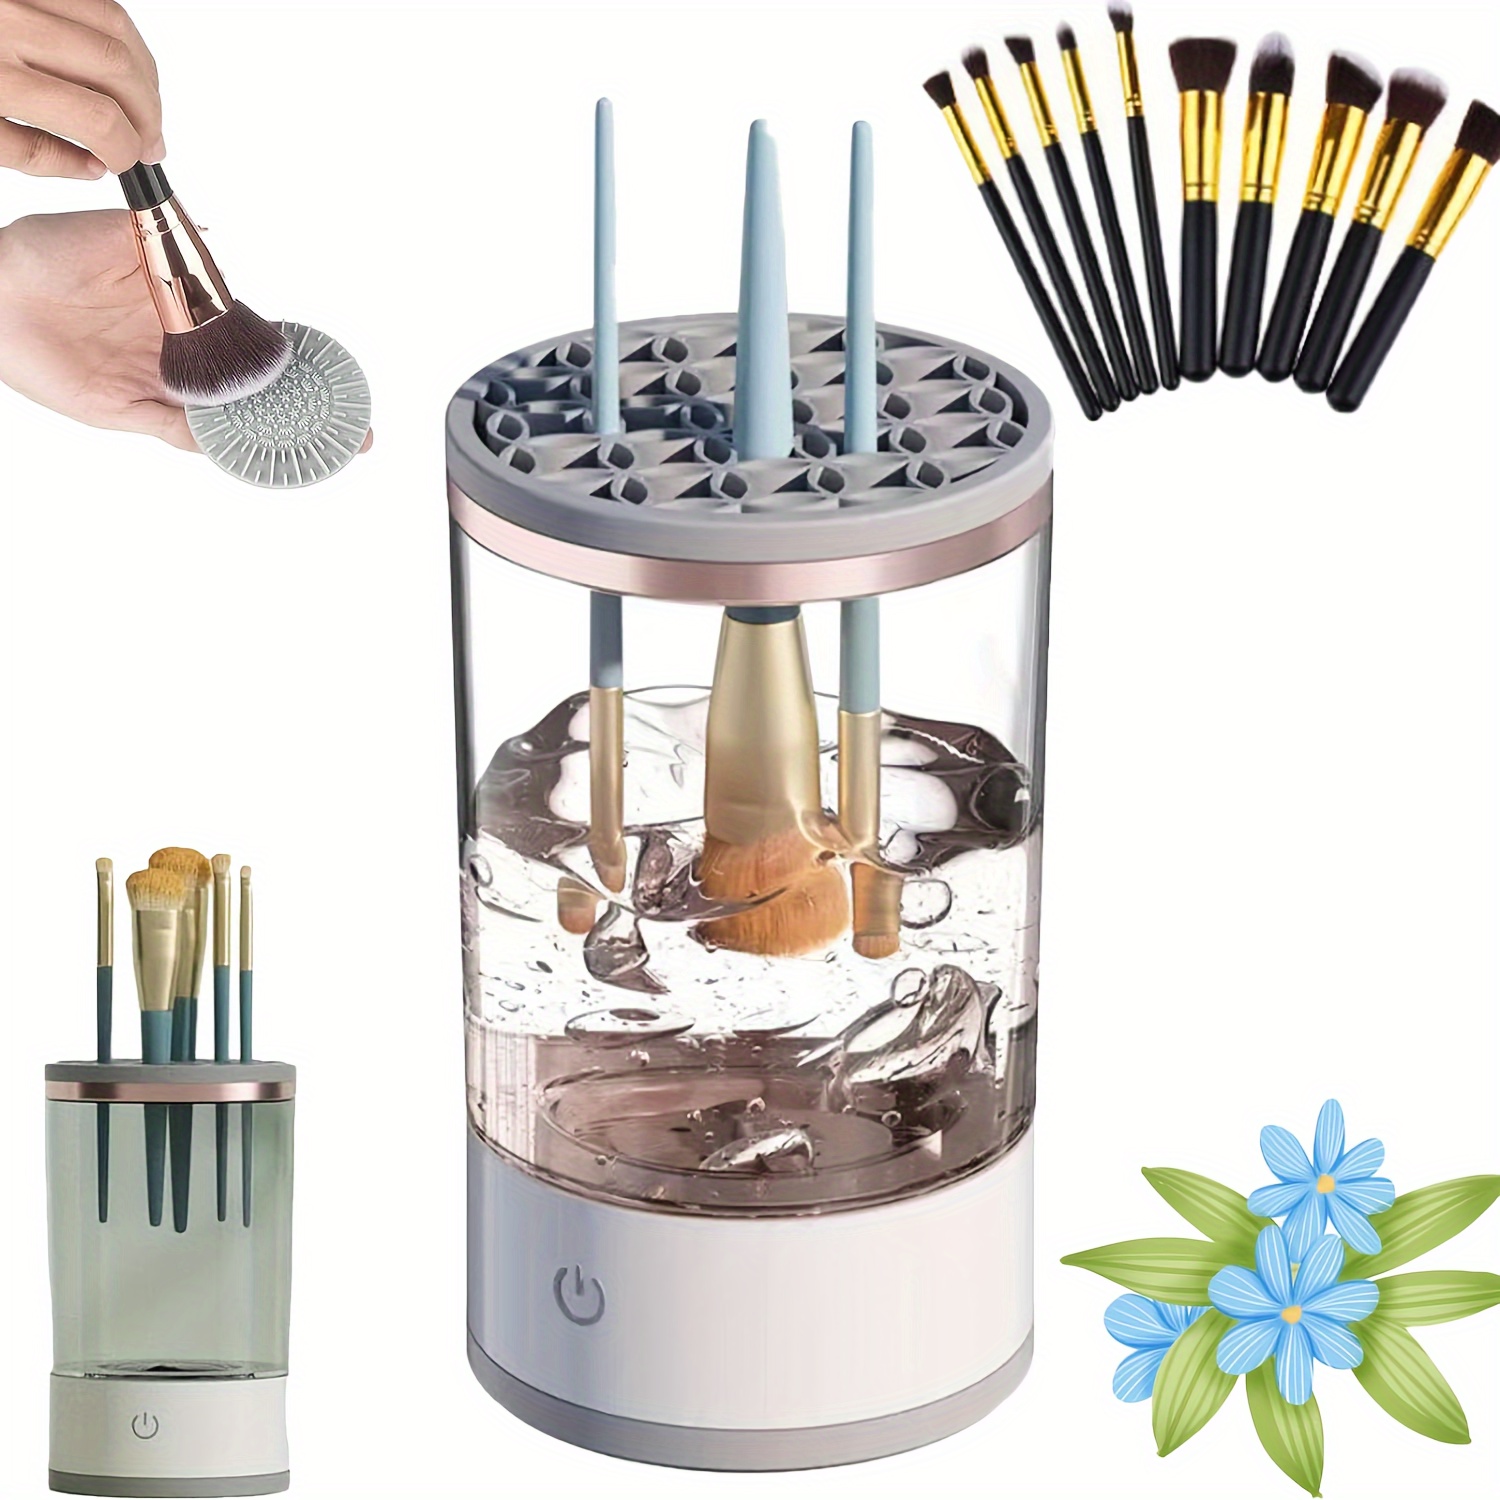 Electric Makeup Brush Cleaner, Abnaok Makeup Brush Cleaner Machine with  Brush Clean Mat, Automatic Cosmetic Brush Cleaner Makeup Brush Tools for  All